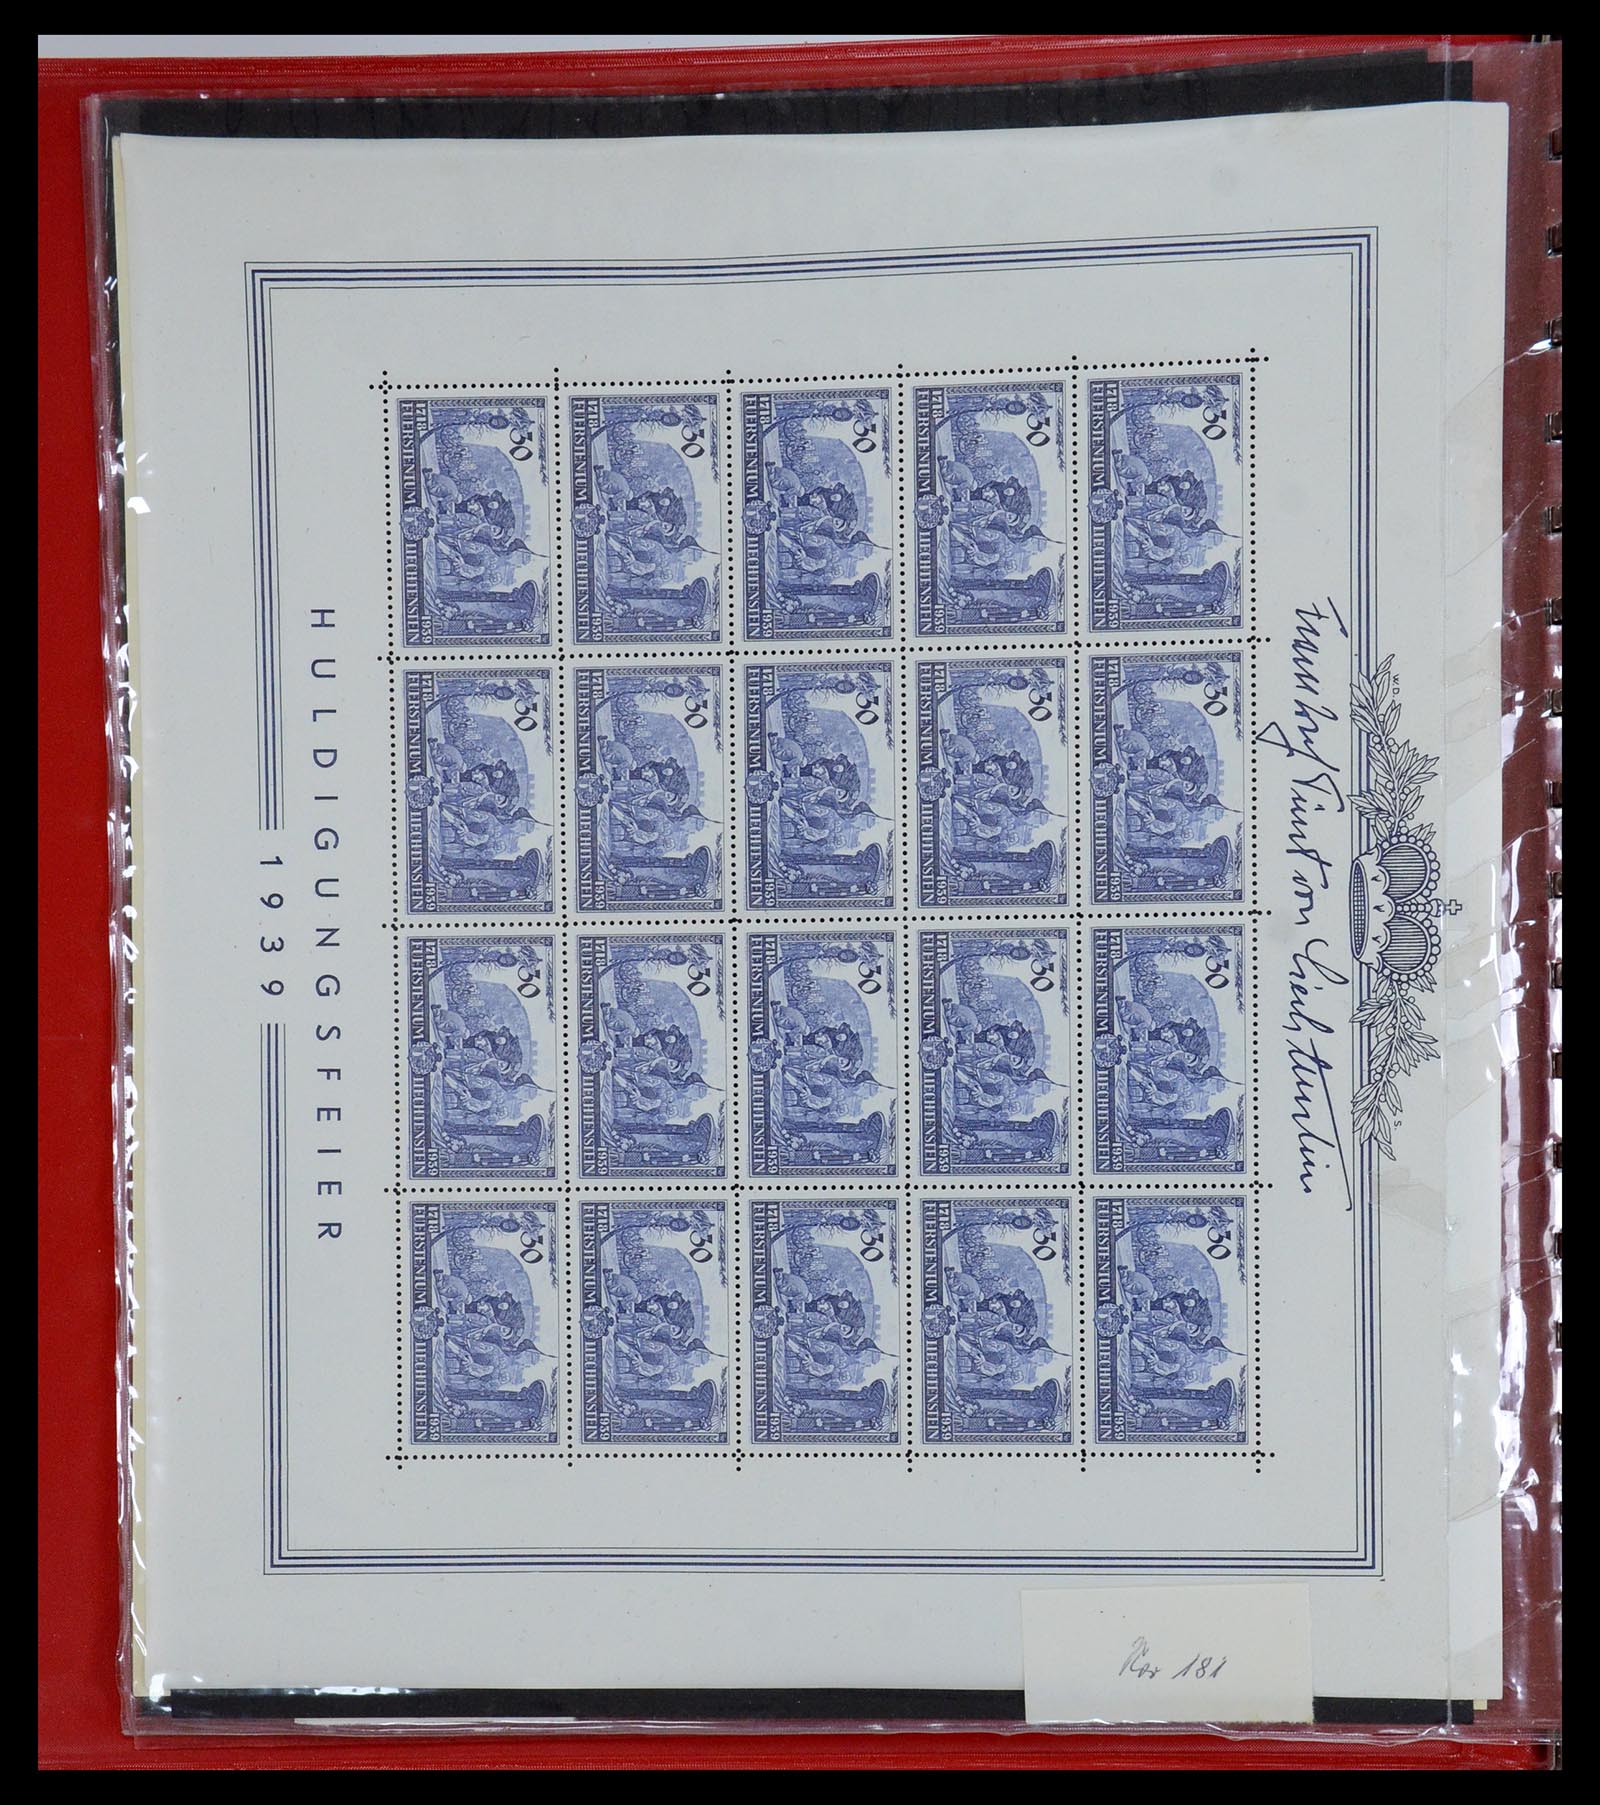 36280 004 - Stamp collection 36280 Liechtenstein souvenir sheets and sheetlets 1934-